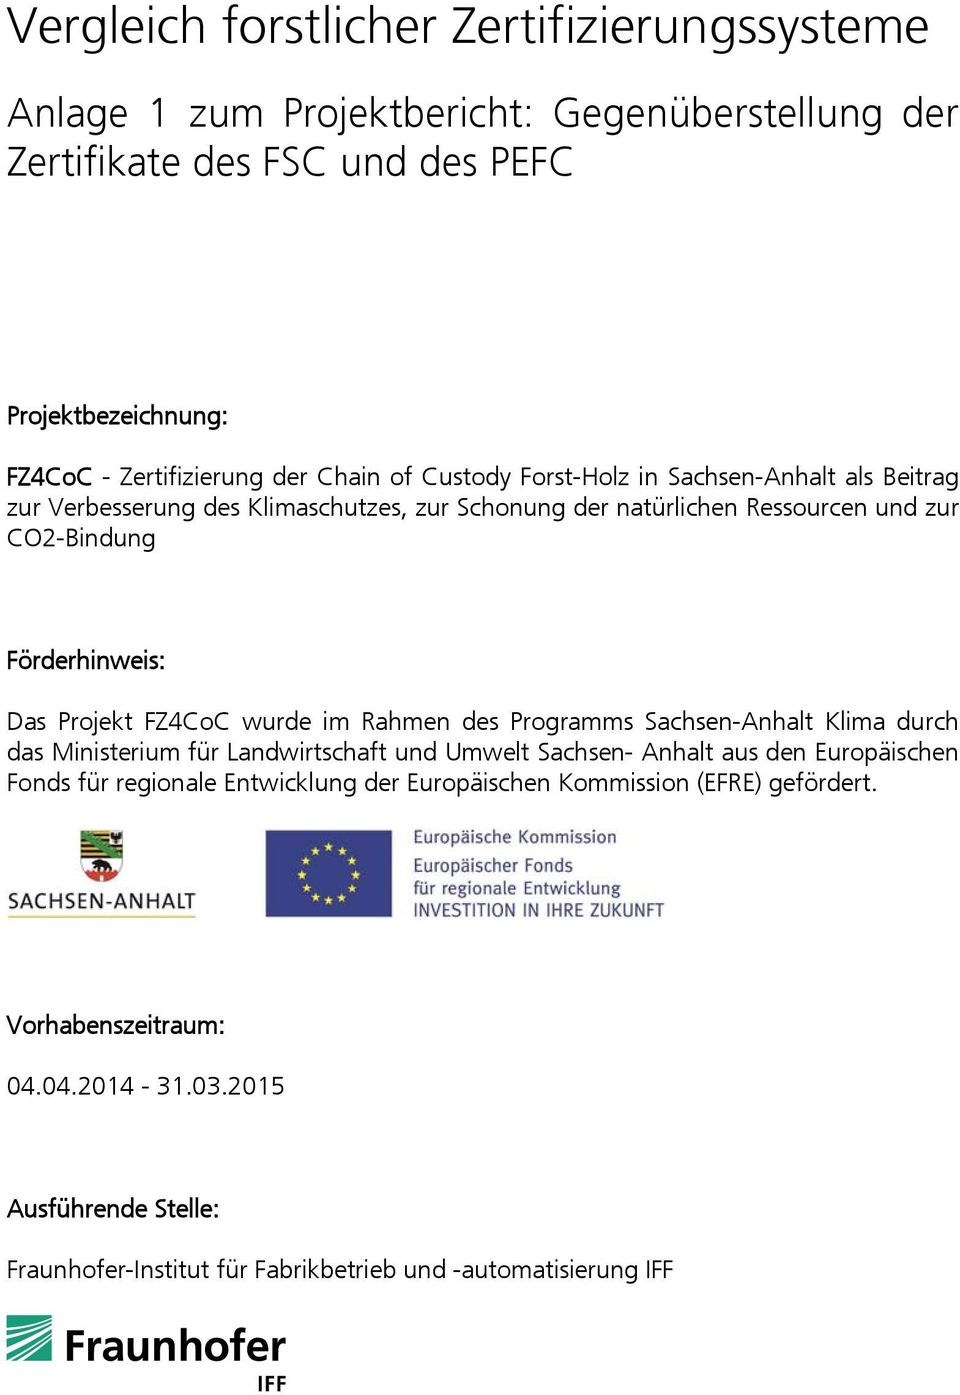 FZ4CoC wurde im Rahmen des Programms Sachsen-Anhalt Klima durch das Ministerium für Landwirtschaft und Umwelt Sachsen- Anhalt aus den Europäischen Fonds für regionale